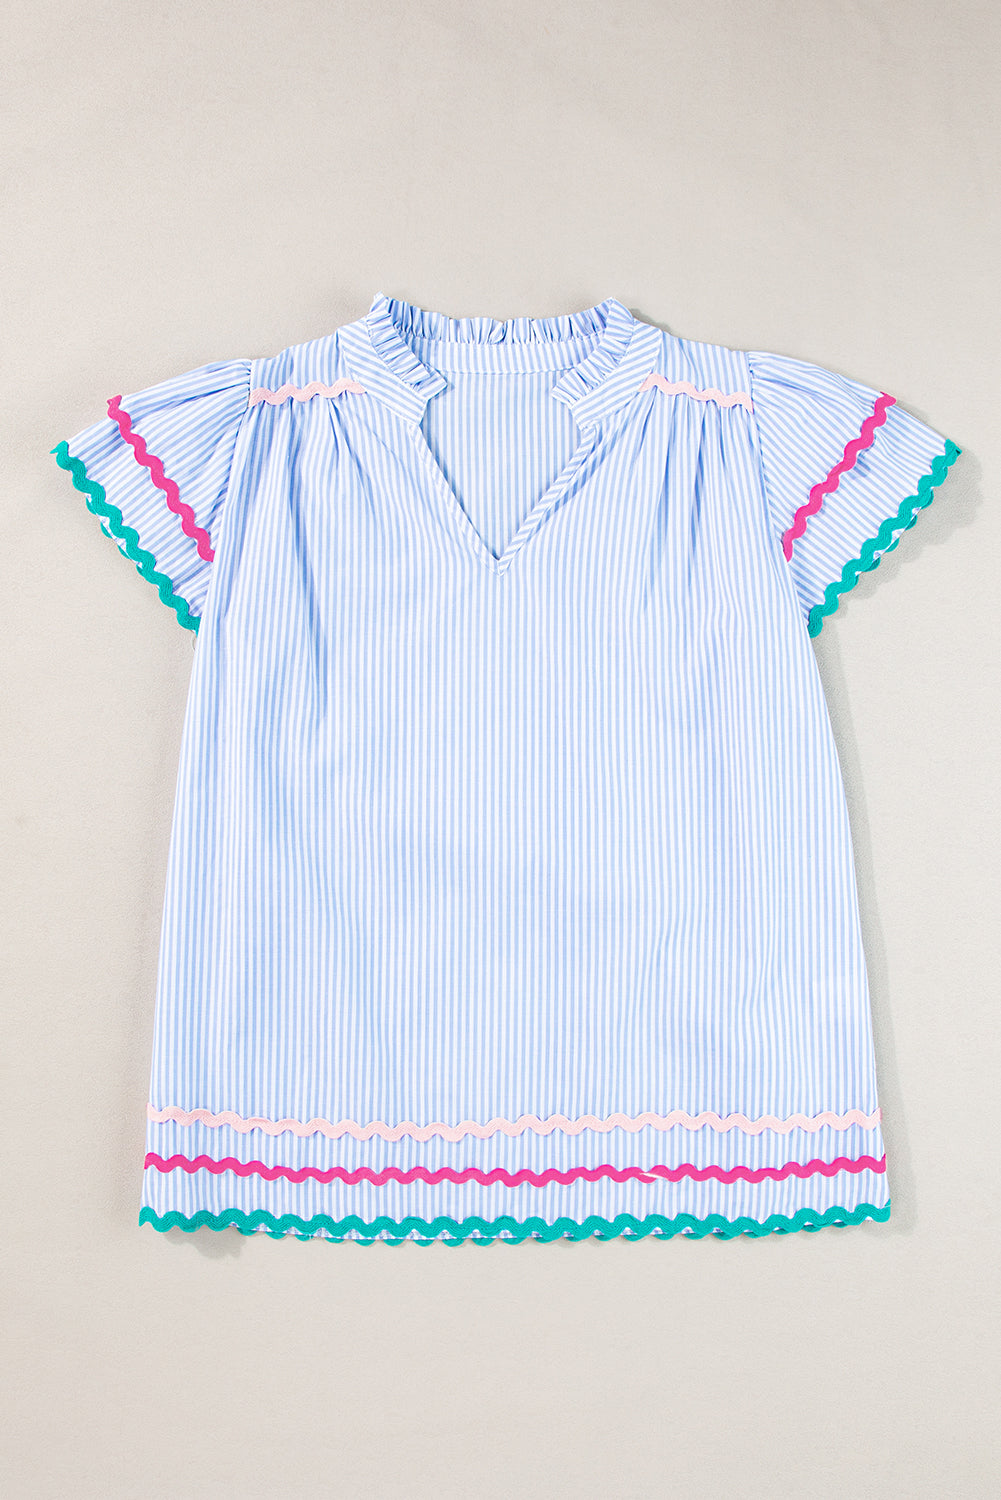 Himmelblaue gestreifte Ricrac-Besatz-Bluse mit geteiltem Ausschnitt und gestreiften Rüschenärmeln